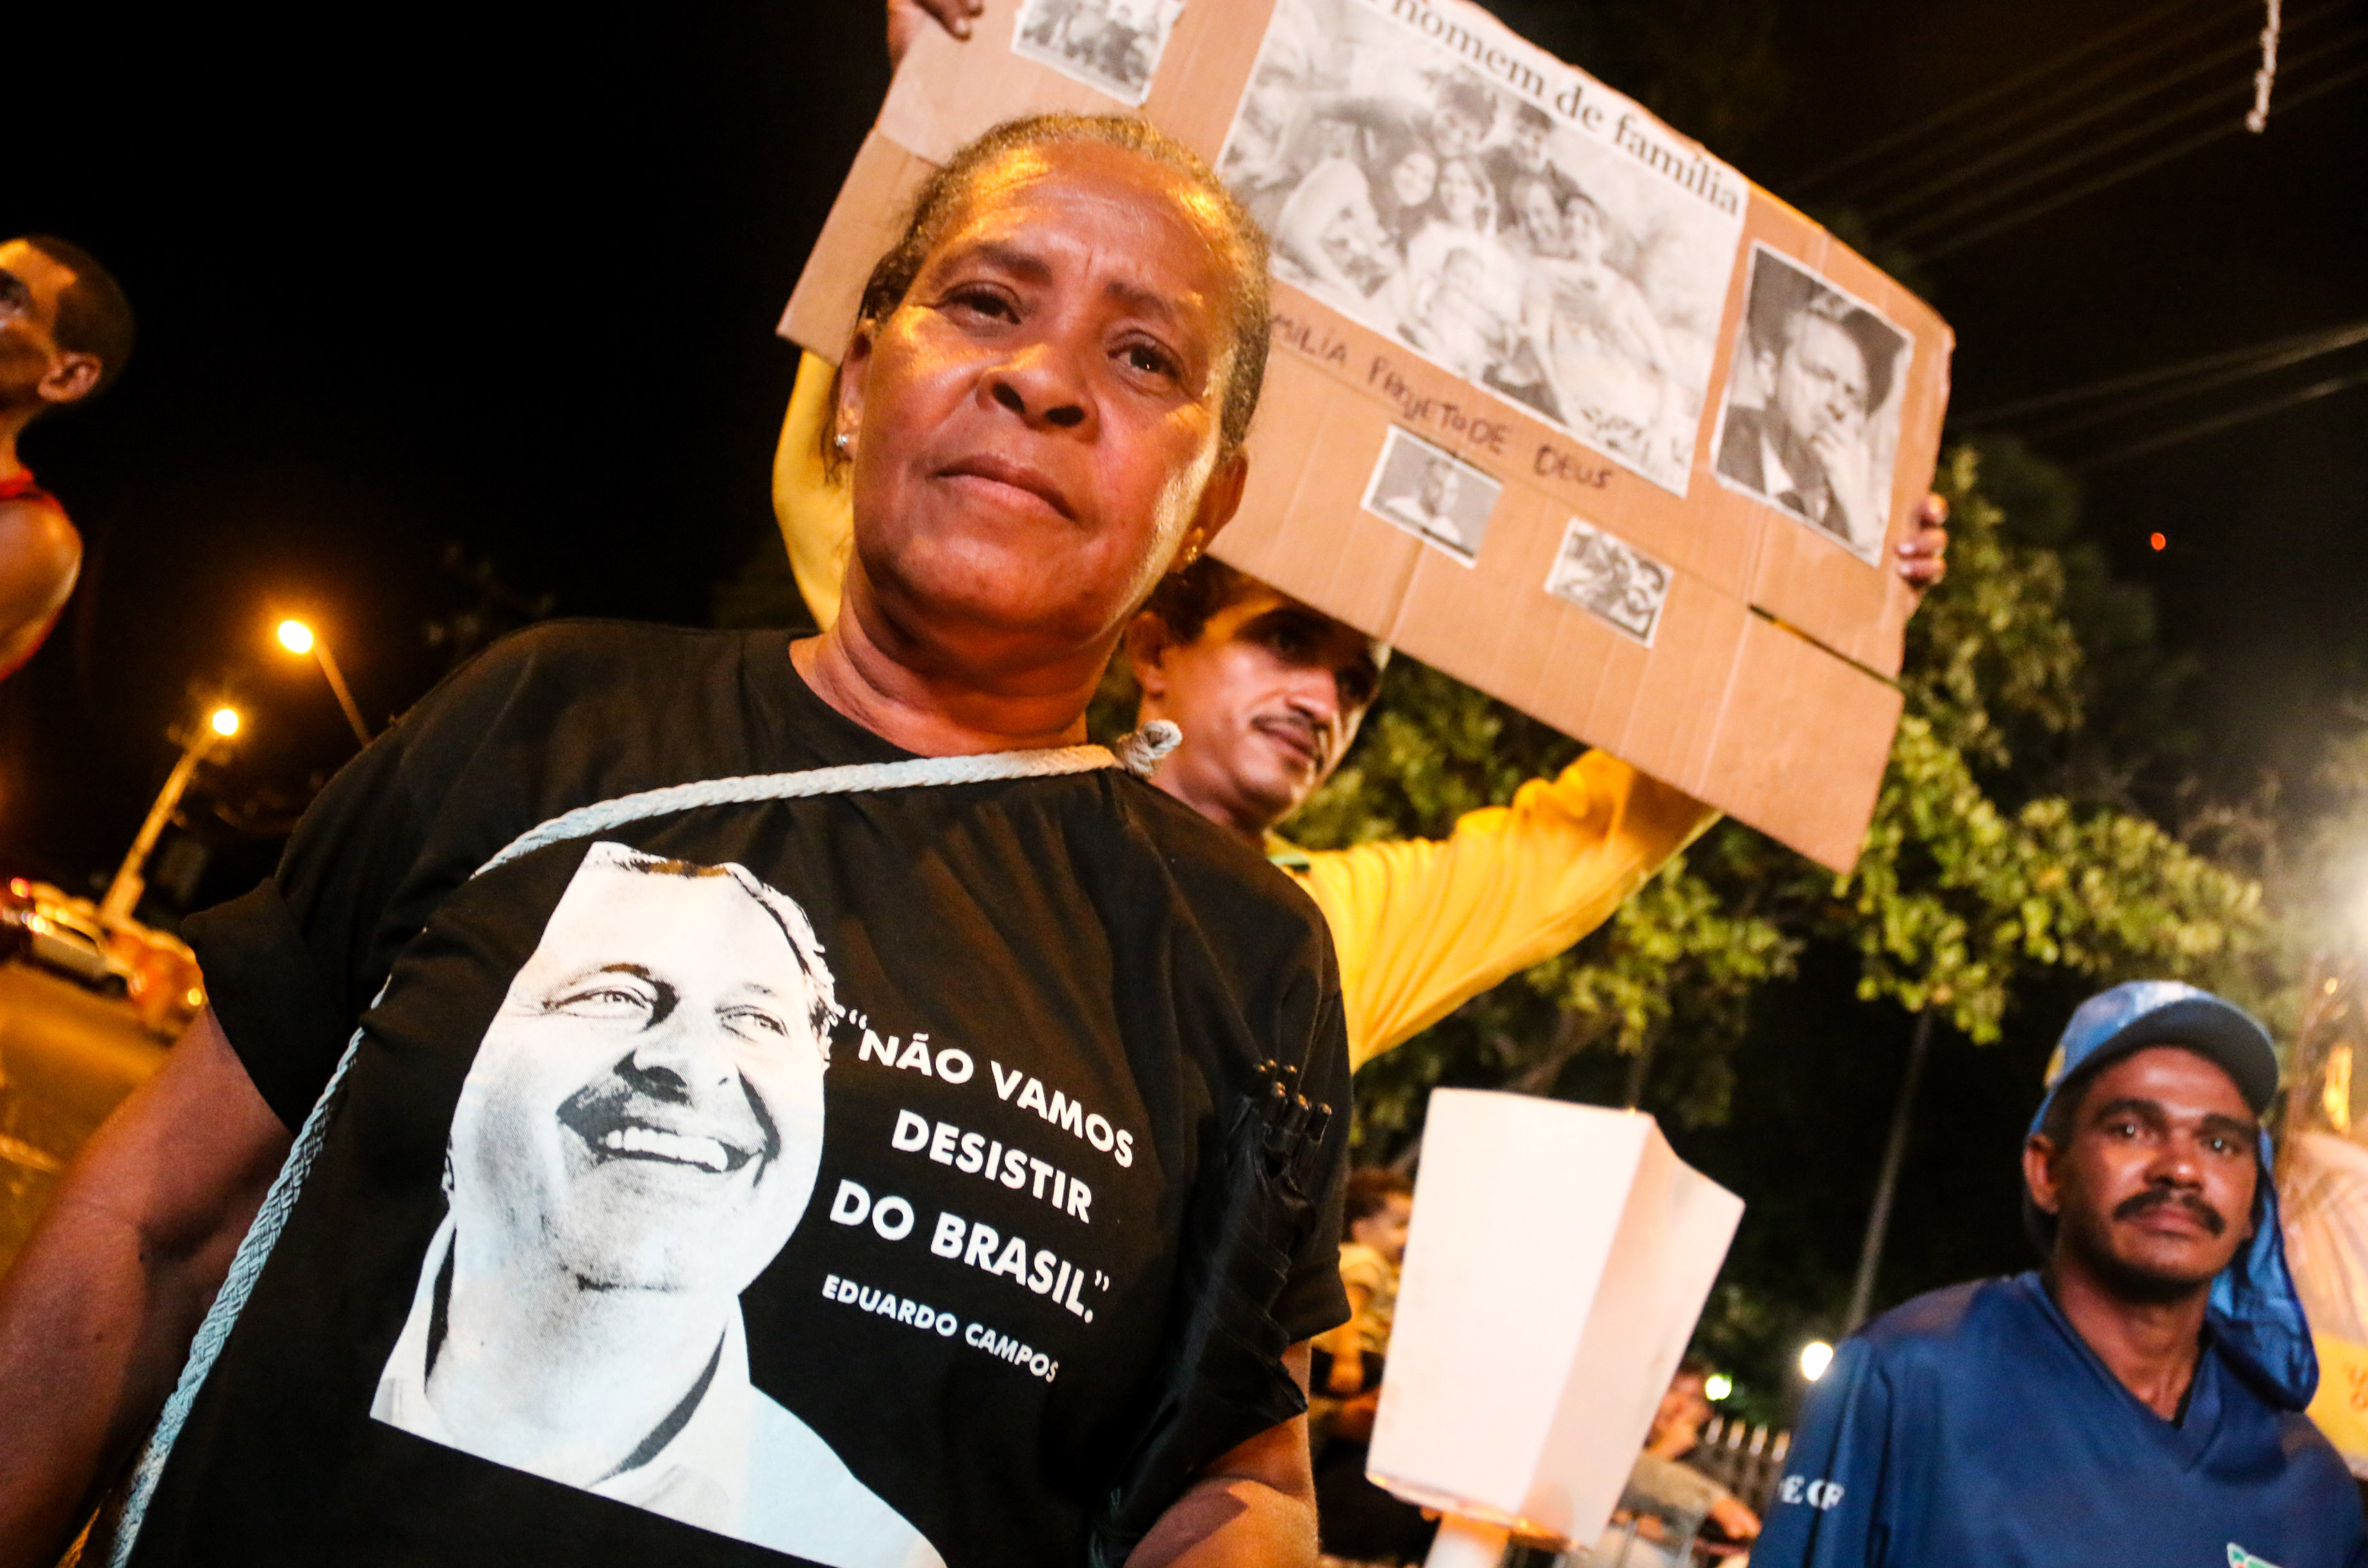 Ebc Confira Imagens Do Vel Rio E Enterro De Eduardo Campos No Recife